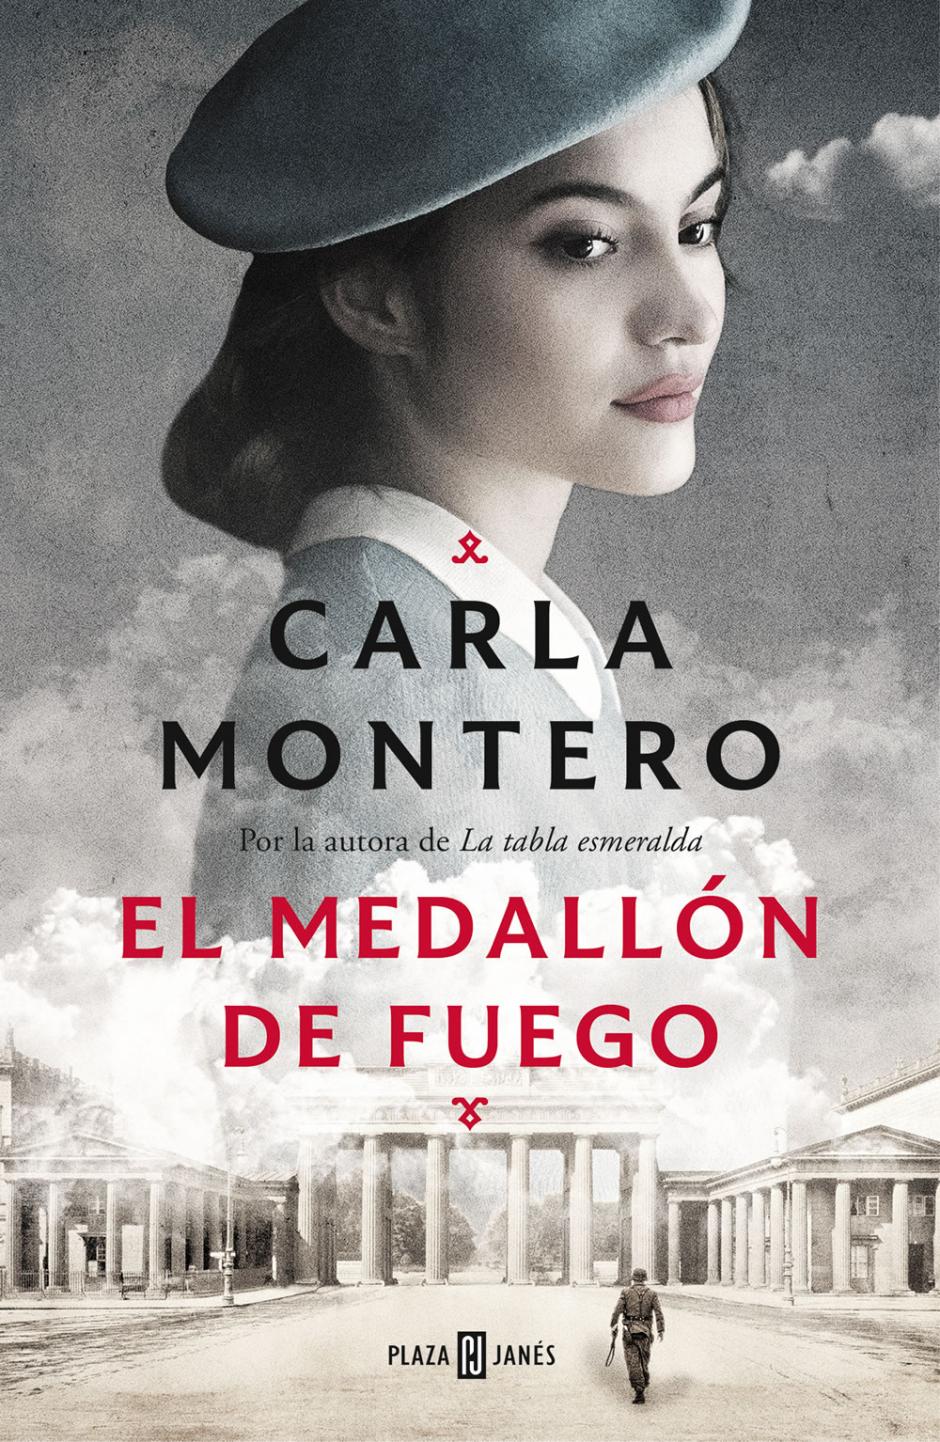 Carla Montero. Biografías y libros de autores en Anika Entre Libros.  Literatura